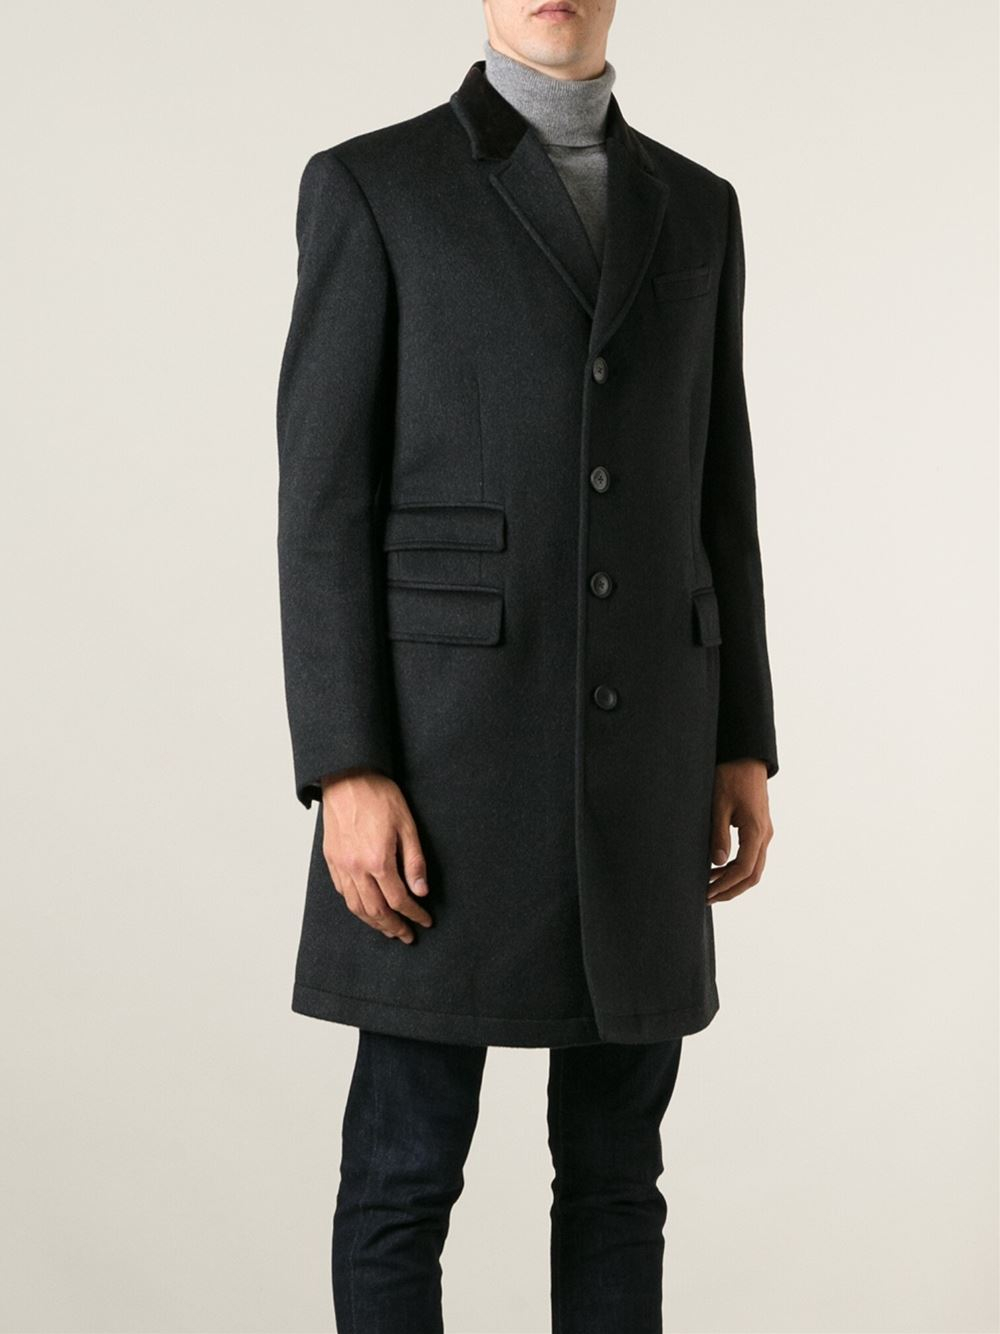 Paul Smith 'Epsom' Coat in Black for Men - Lyst